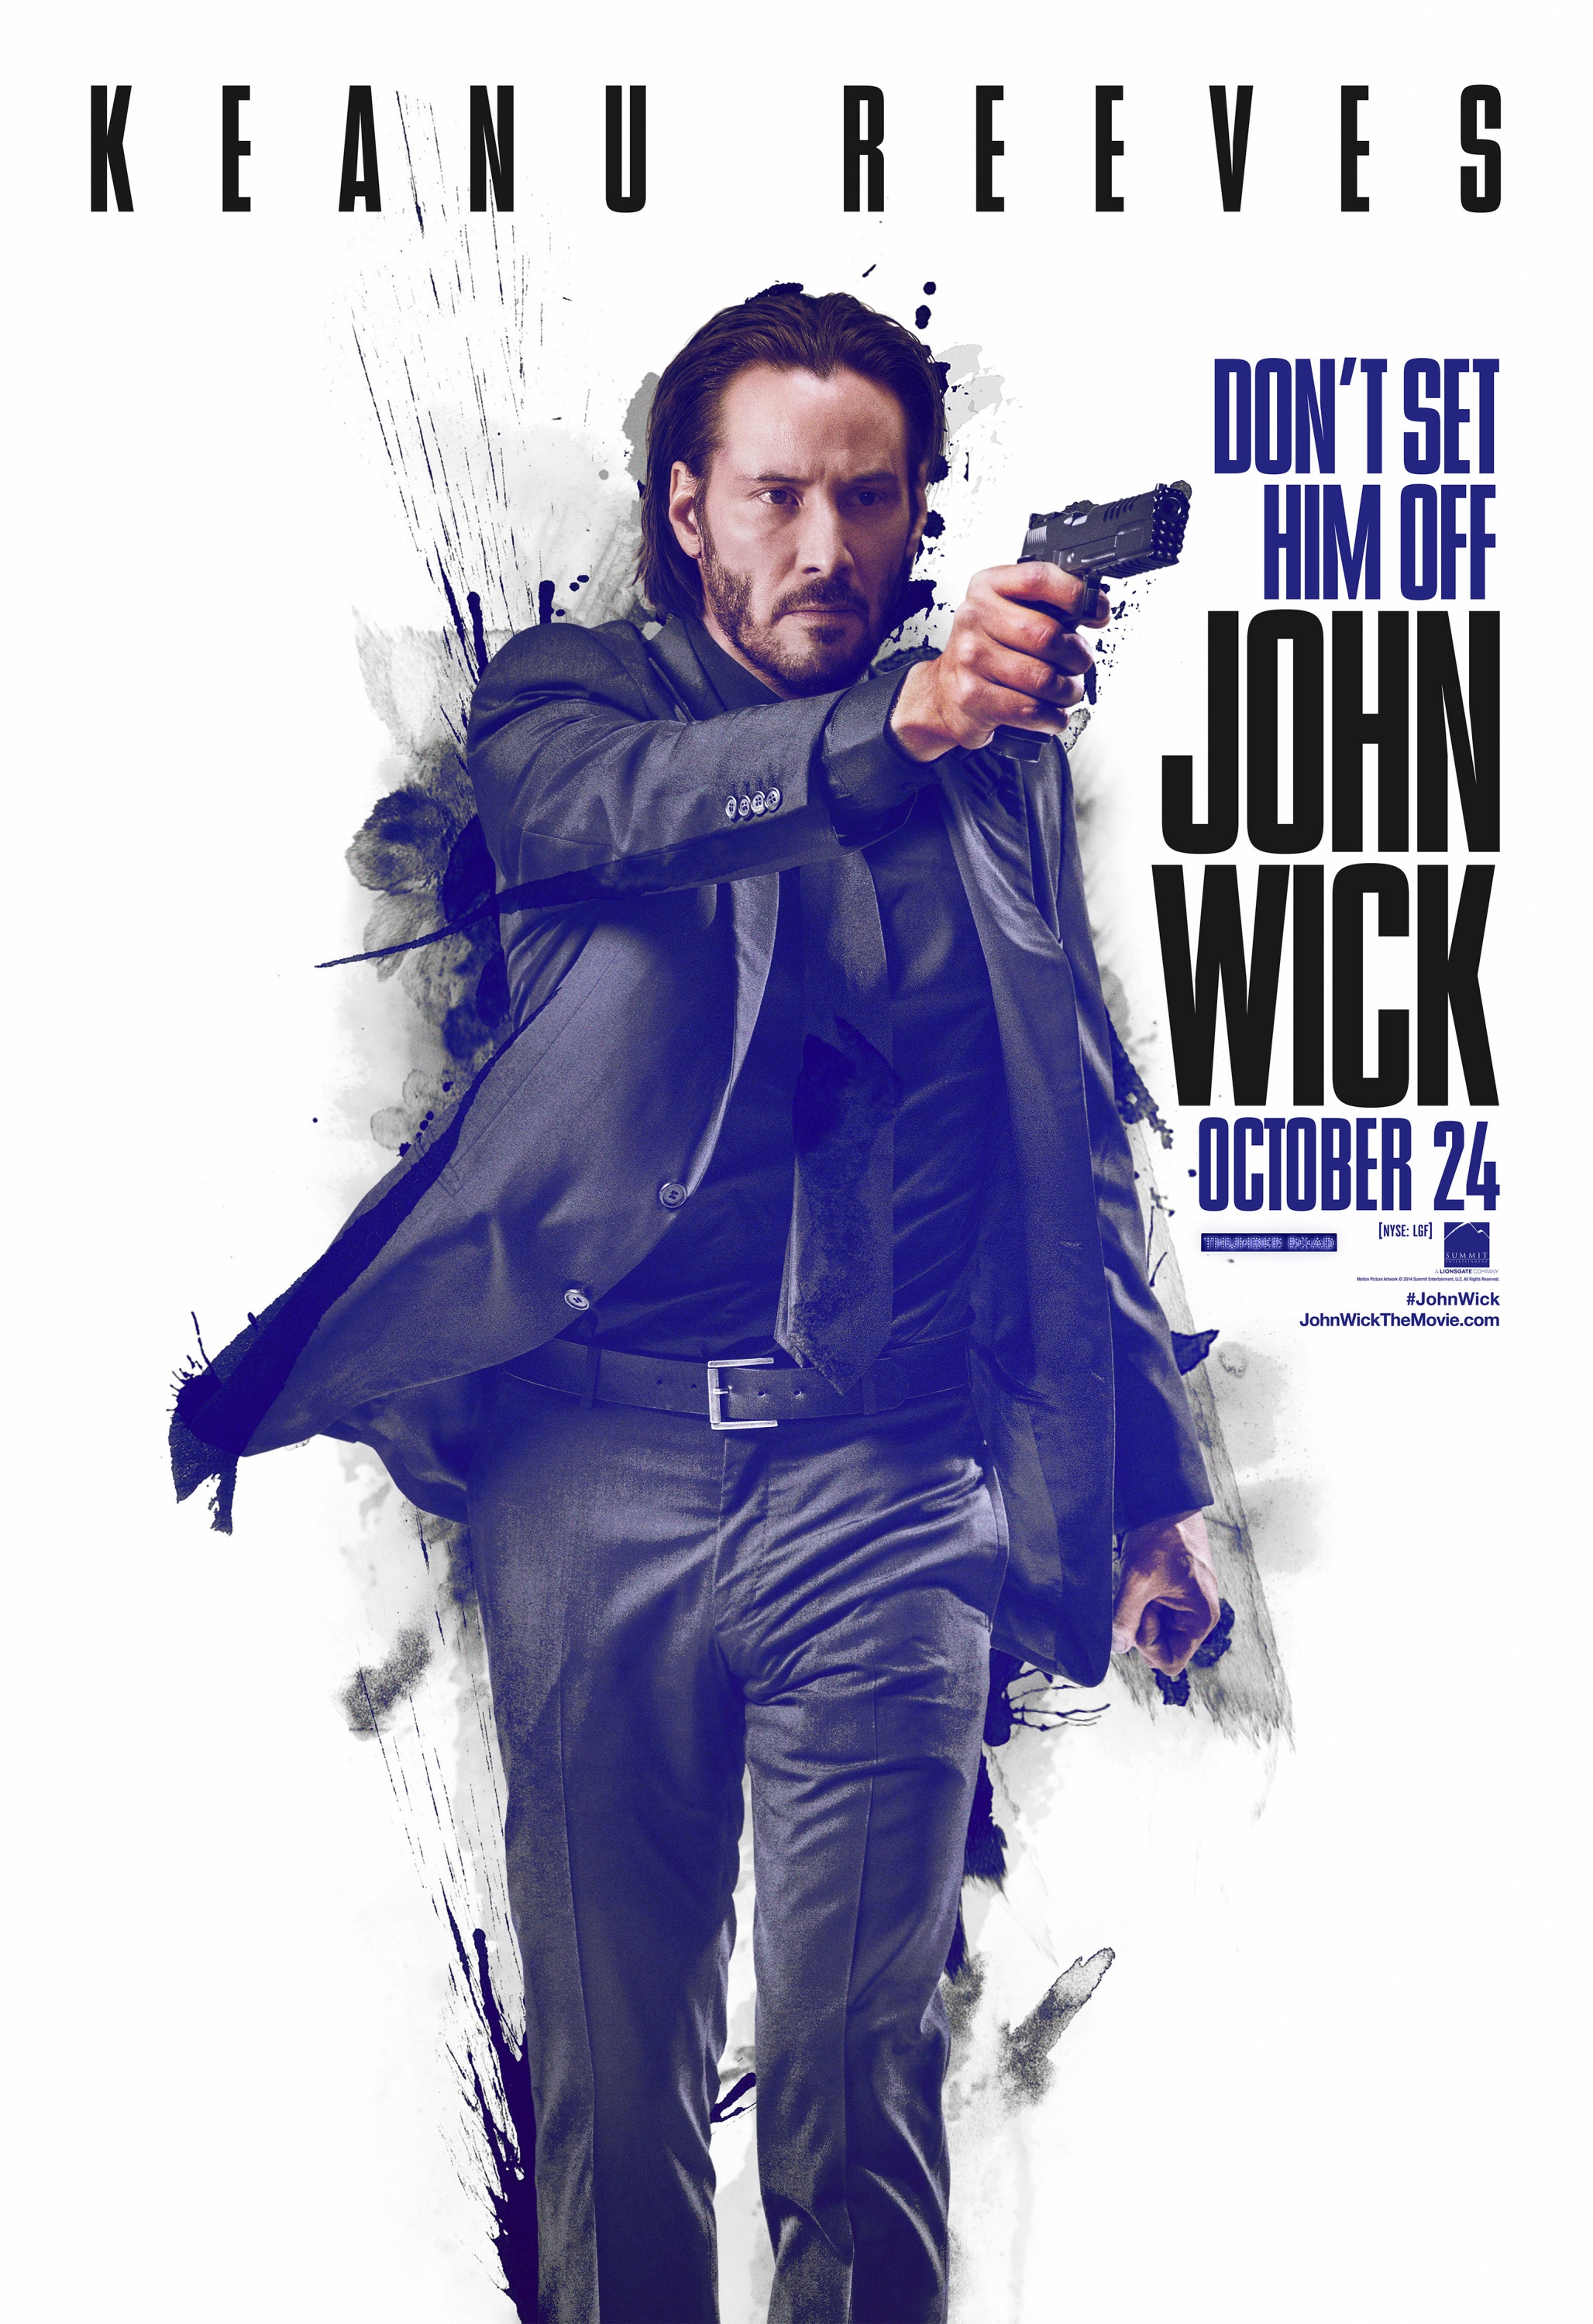 John Wick (2014) – GOAT Film Reviews